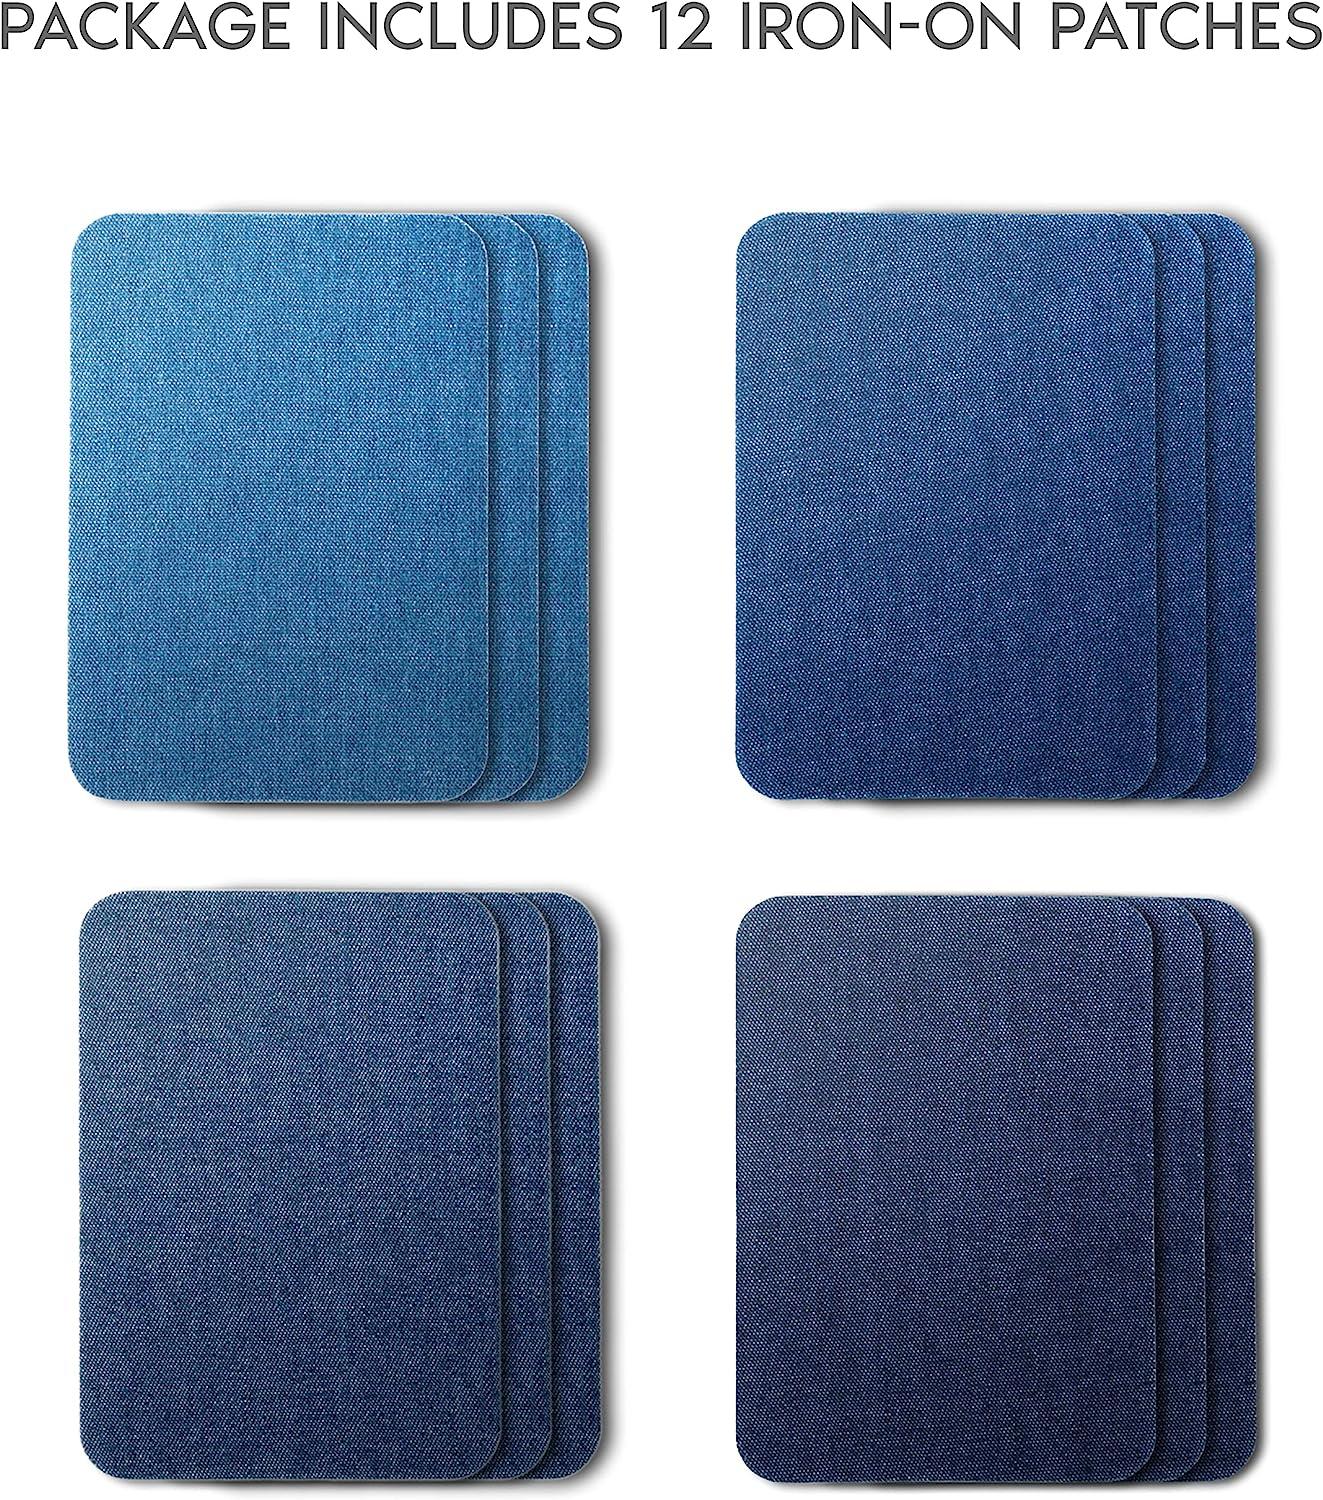  TACVEL 12Pcs Premium Quality Denim Iron on Patches for Jeans,  Strongest Glue 100% Cotton Repair Decorating Kit, Size 3 by 4-1/4 (7.5 cm  x 10.5 cm)-Deep Blue